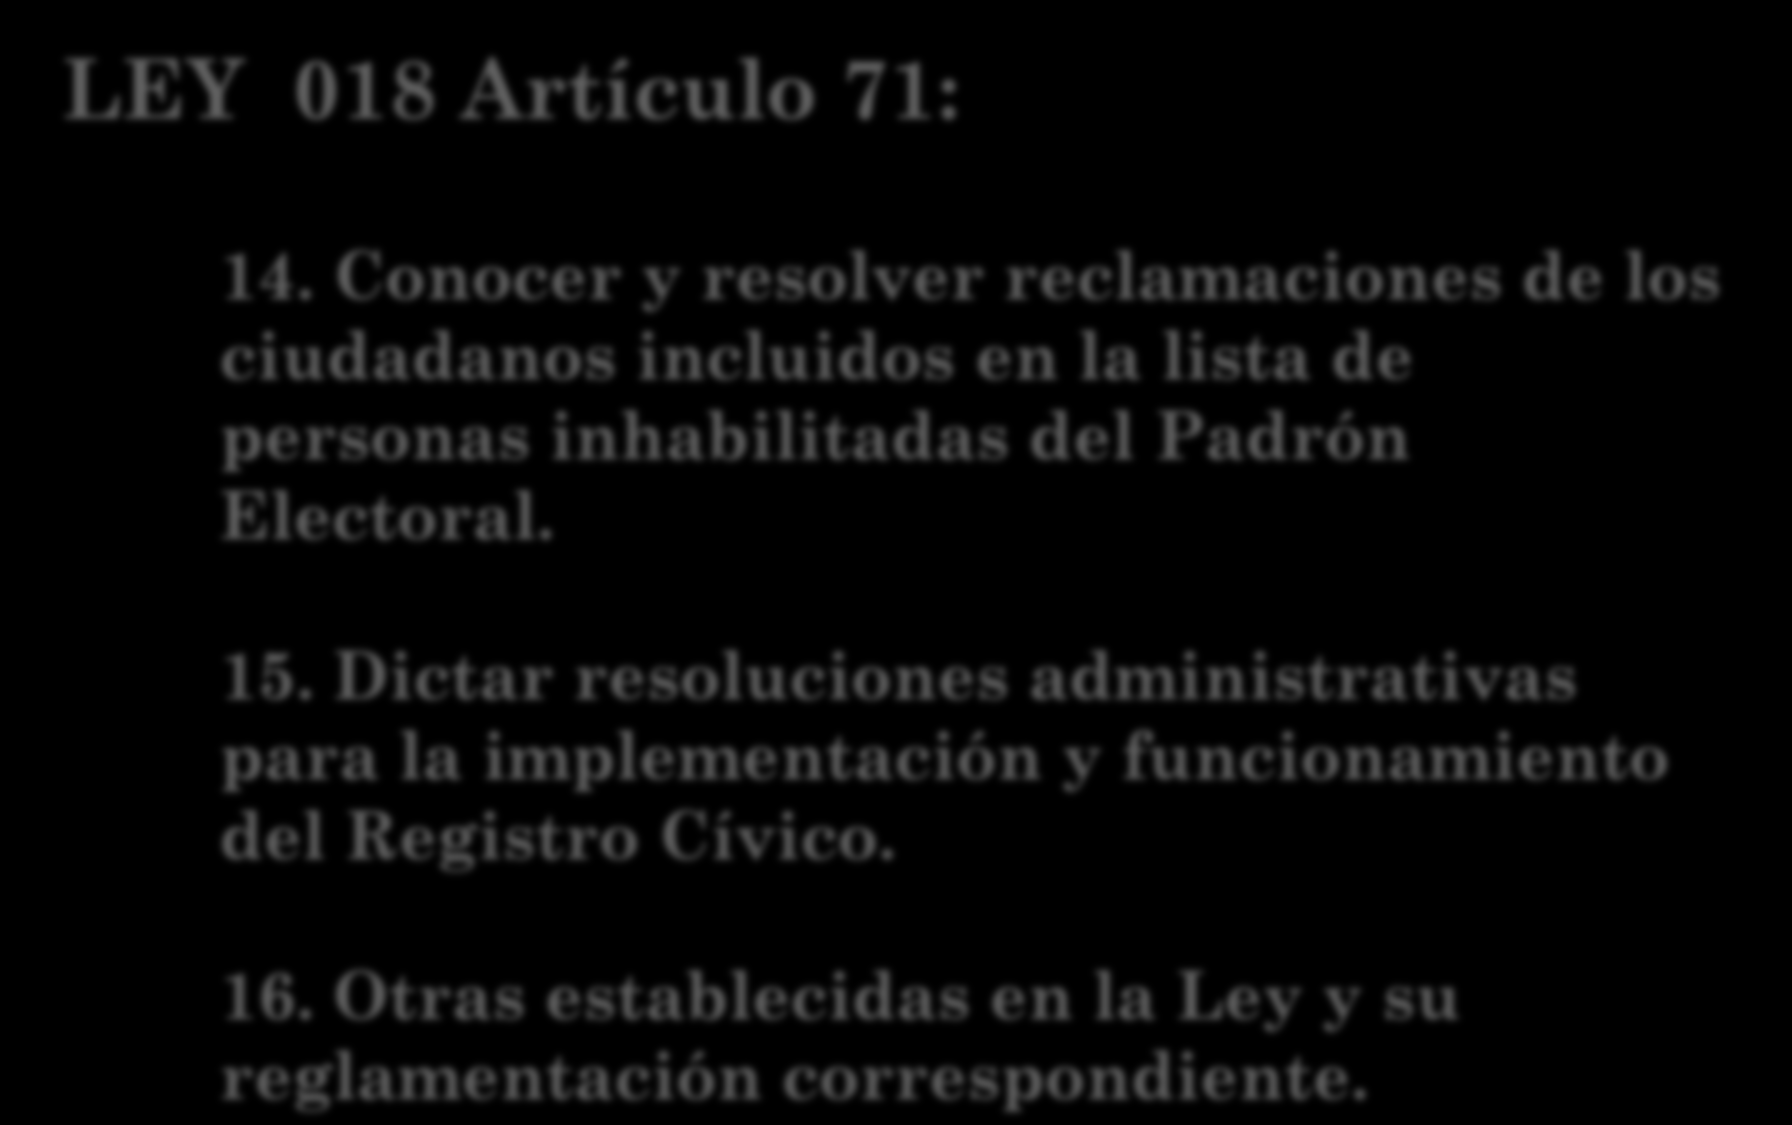 LEY 018 Artículo 71: 14. Conocer y resolver reclamaciones de los ciudadanos incluidos en la lista de personas inhabilitadas del Padrón Electoral. 15.